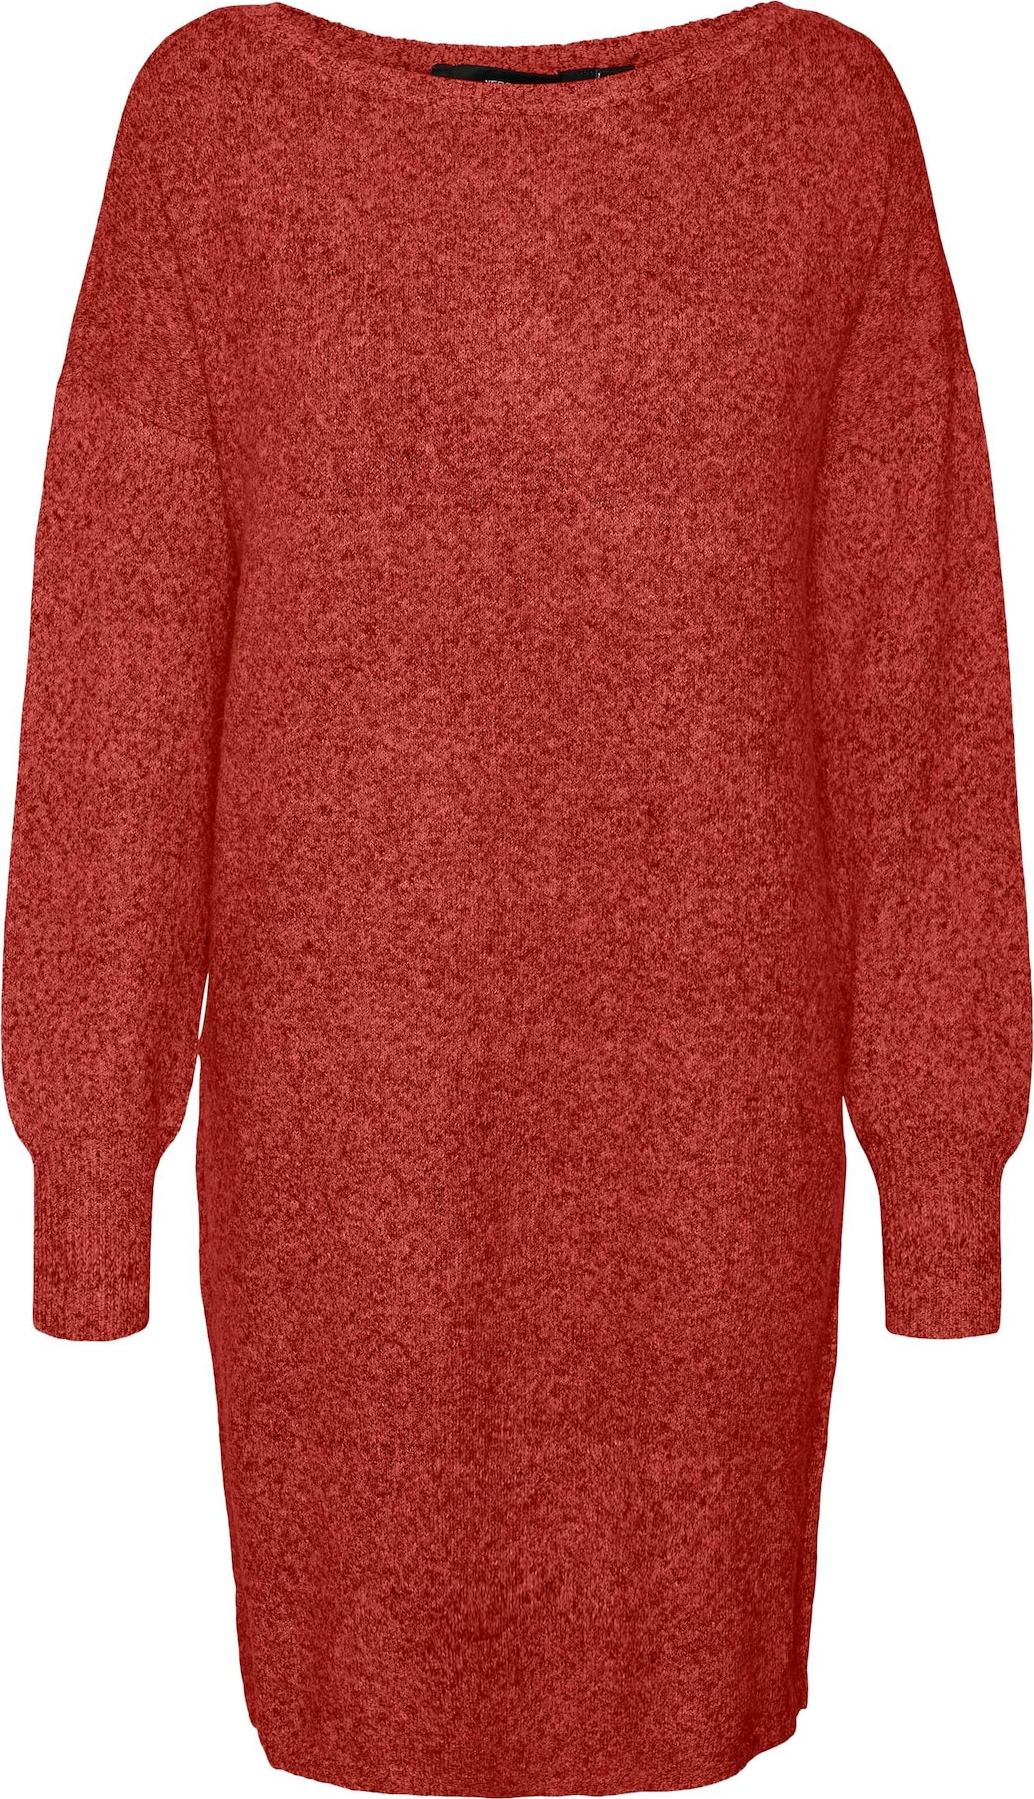 Úpletové šaty 'DOFFY' Vero Moda červený melír